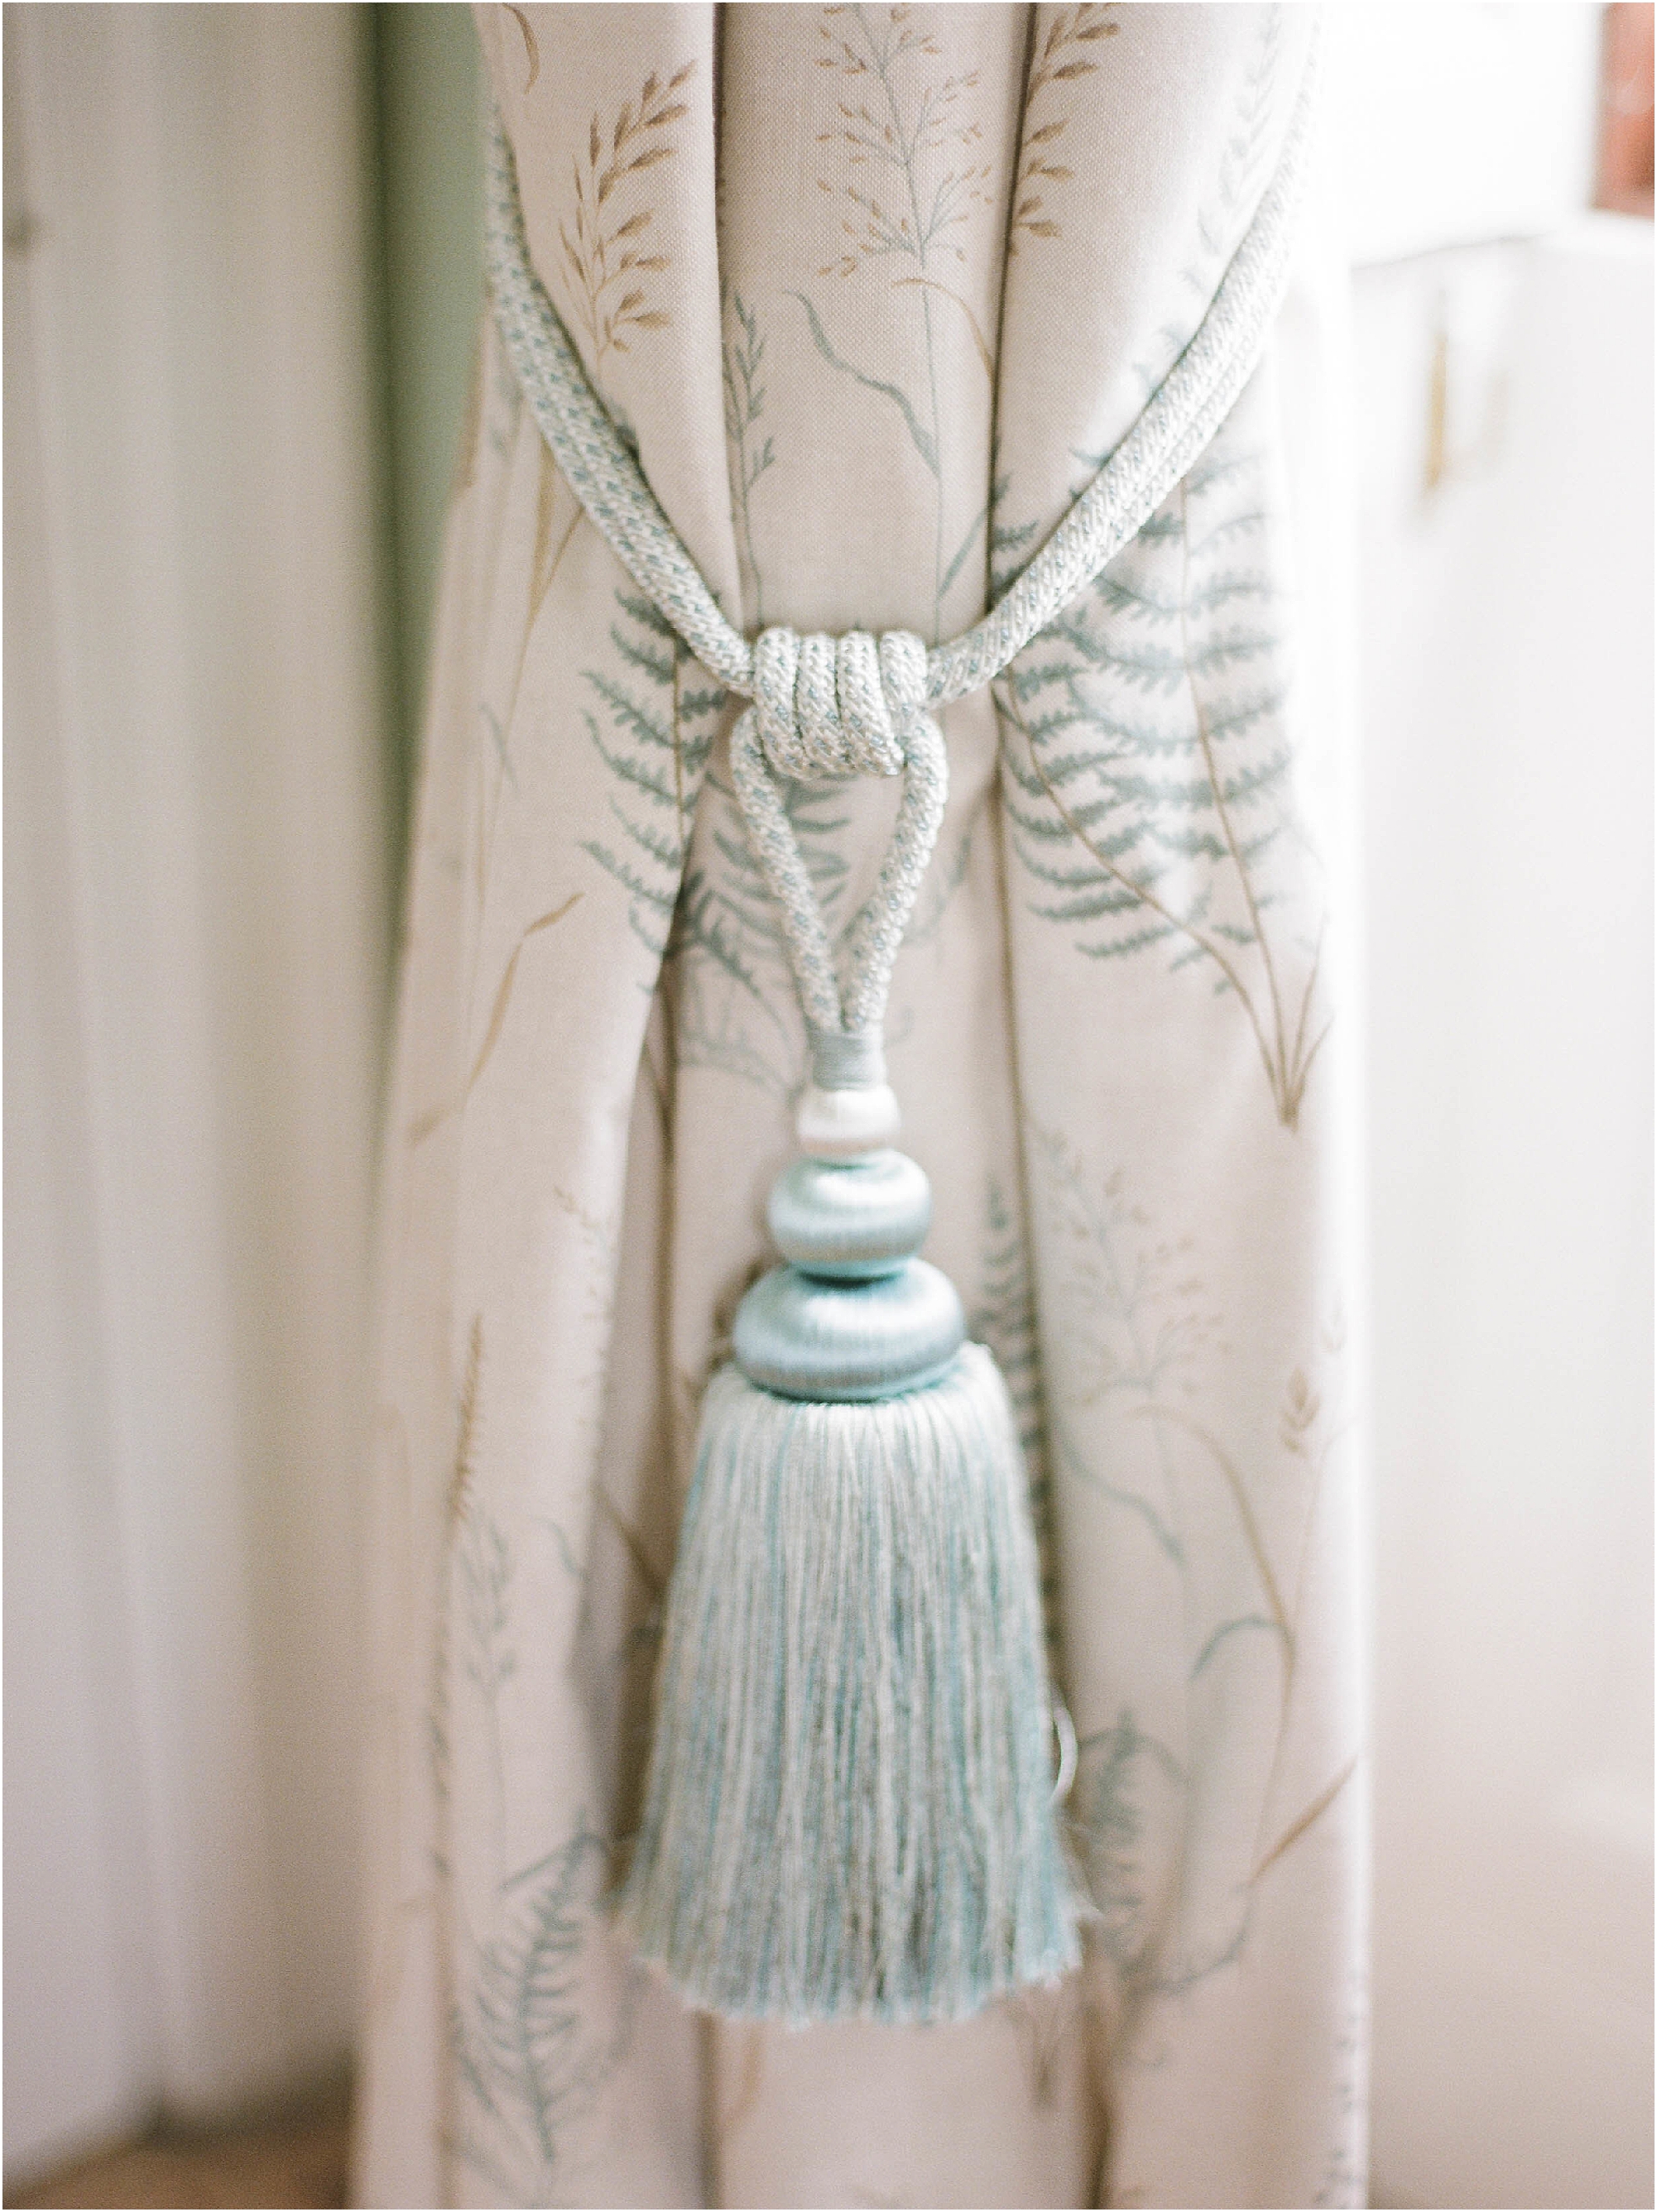 Silk tassel on curtain